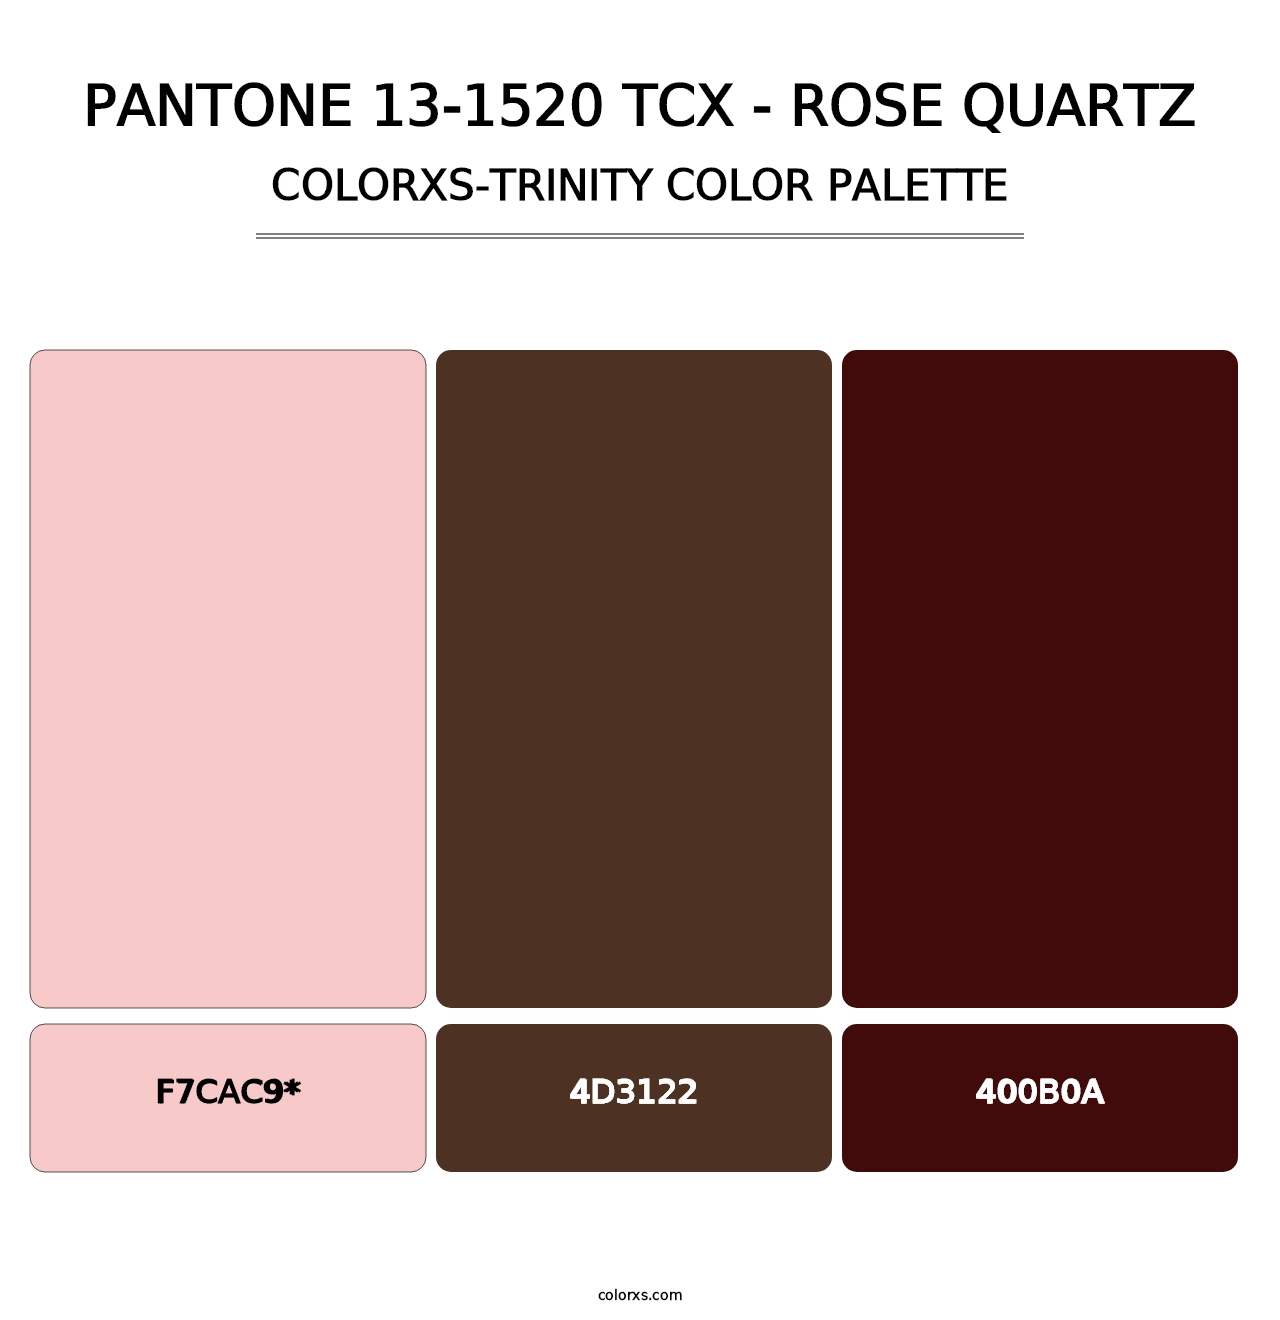 PANTONE 13-1520 TCX - Rose Quartz - Colorxs Trinity Palette